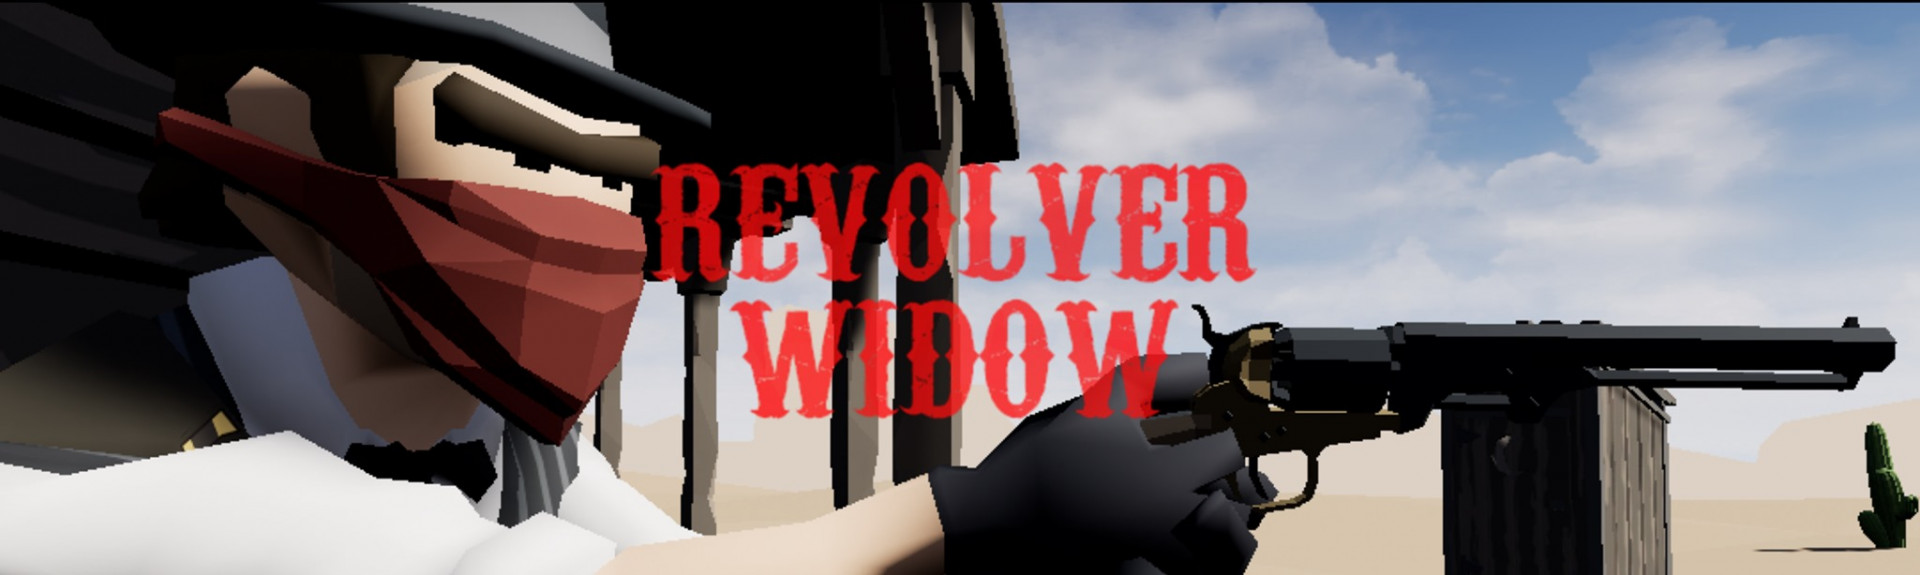 Revolver Widow